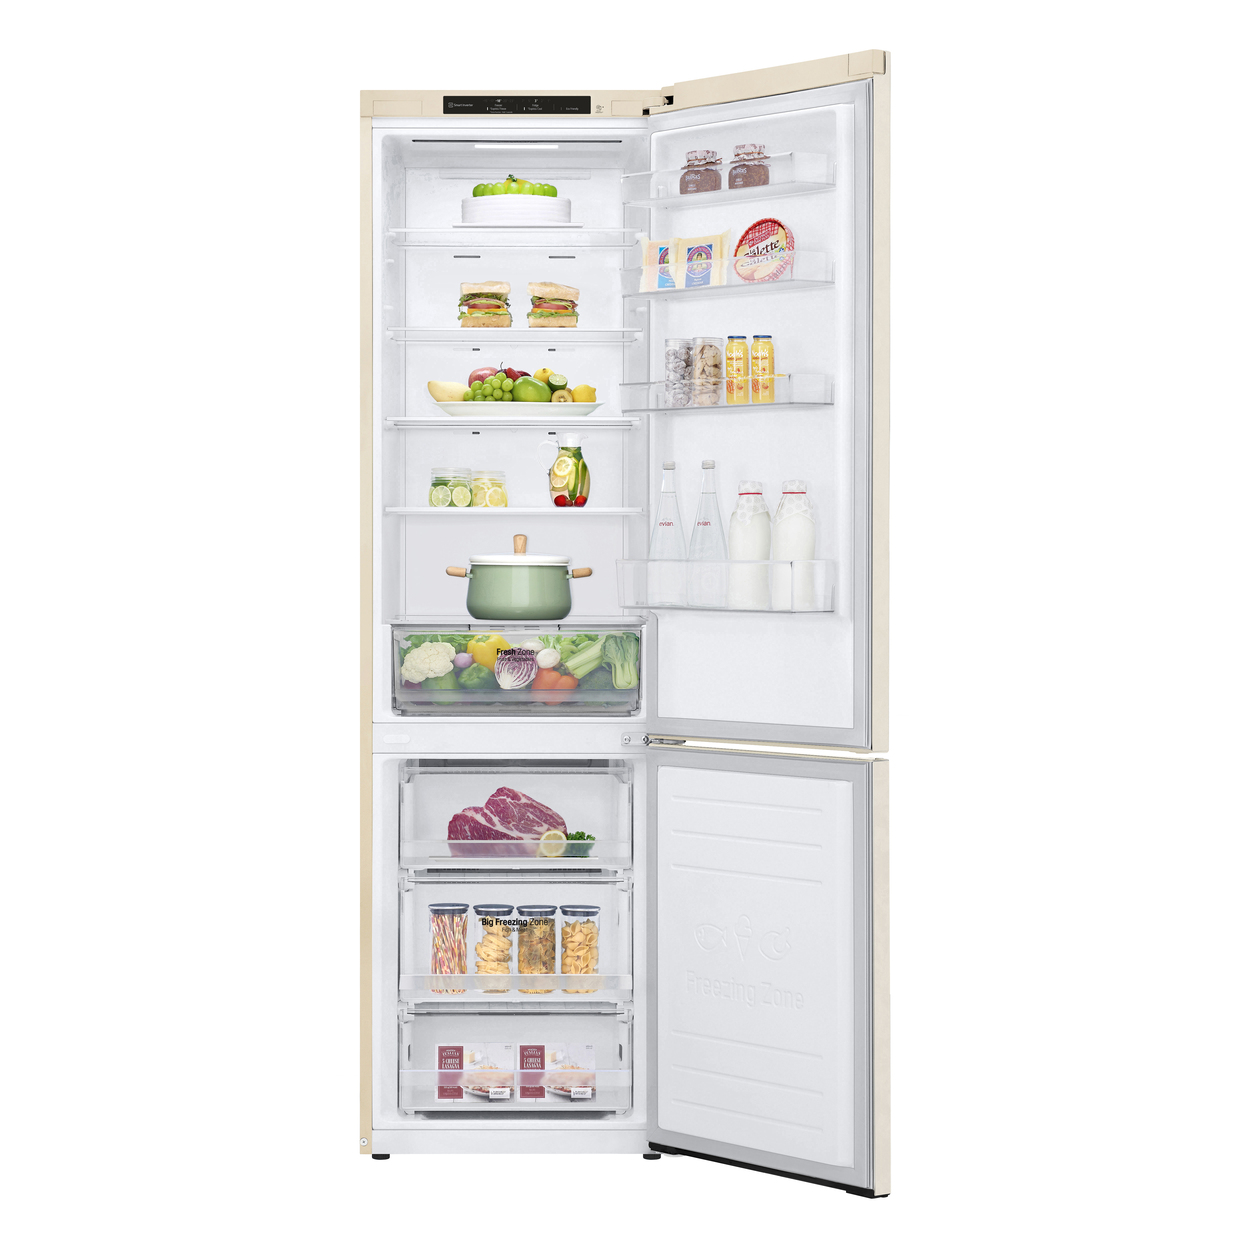 обзор товара Холодильник LG GC-B509SECL - фотография 12